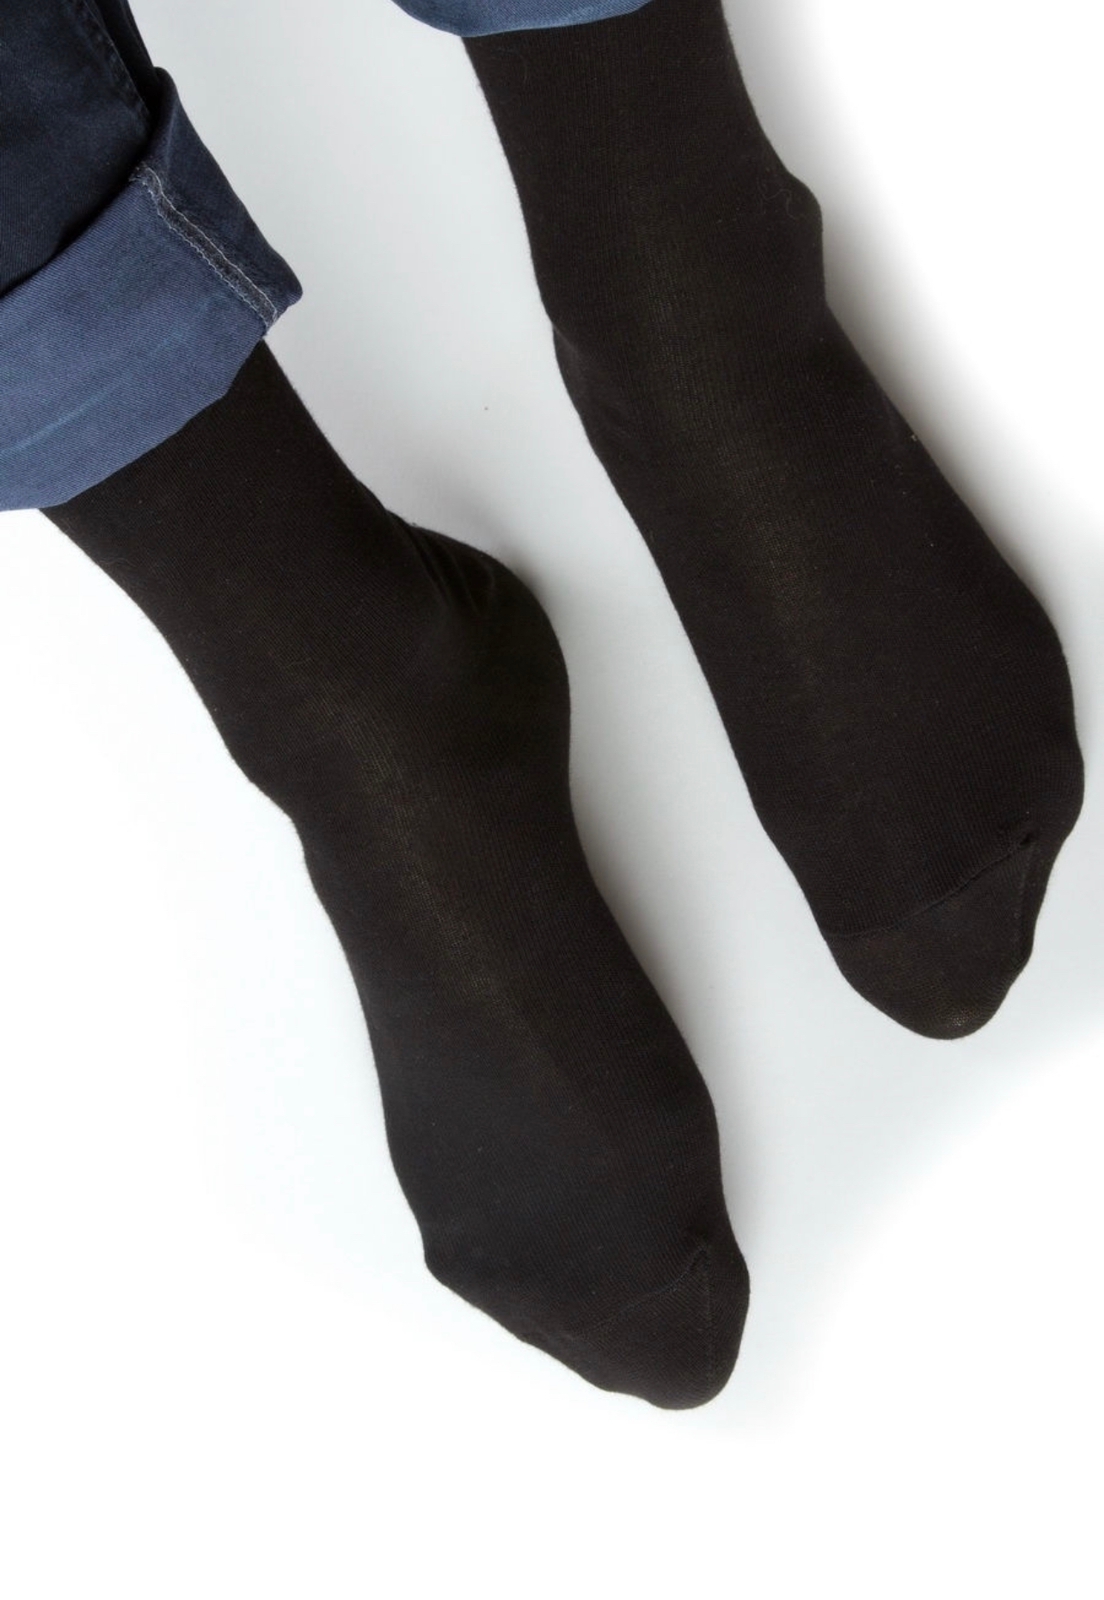 Носки мужские  черные классические в наборе (10 пар)